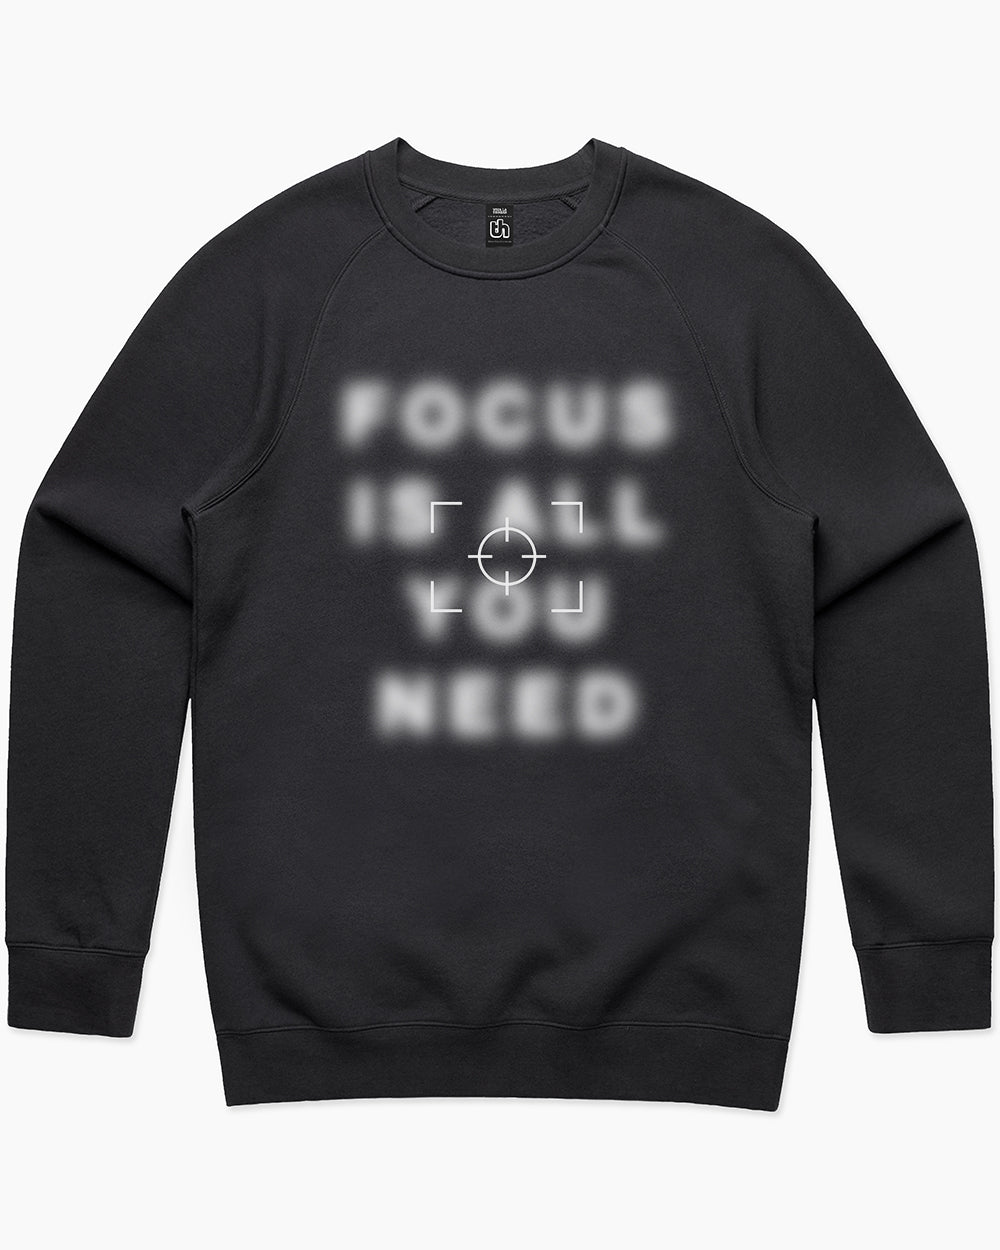 Focus Sweater Australia Online #colour_black